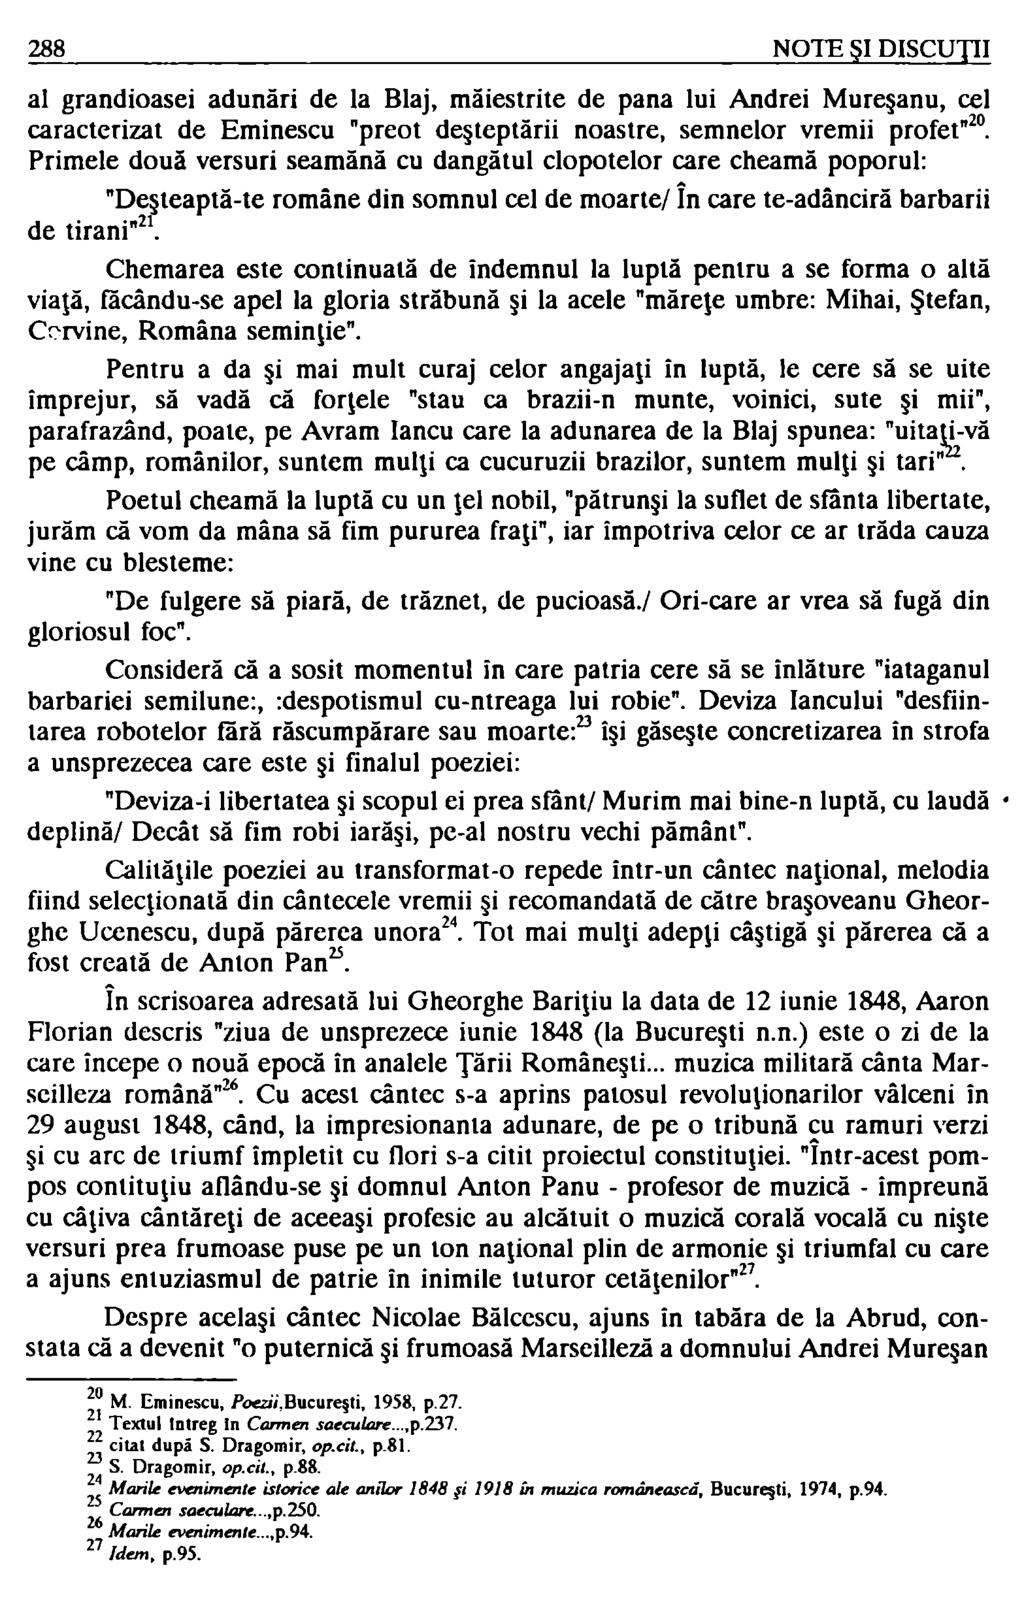 288 NOTE ŞI DISCUJlI al grandioasei adunări de la Blaj, măiestrite de pana lui Andrei Mureşanu, cel caracterizat de Eminescu "preot deşteptării noastre, semnelor vremii profet" 20 Primele două